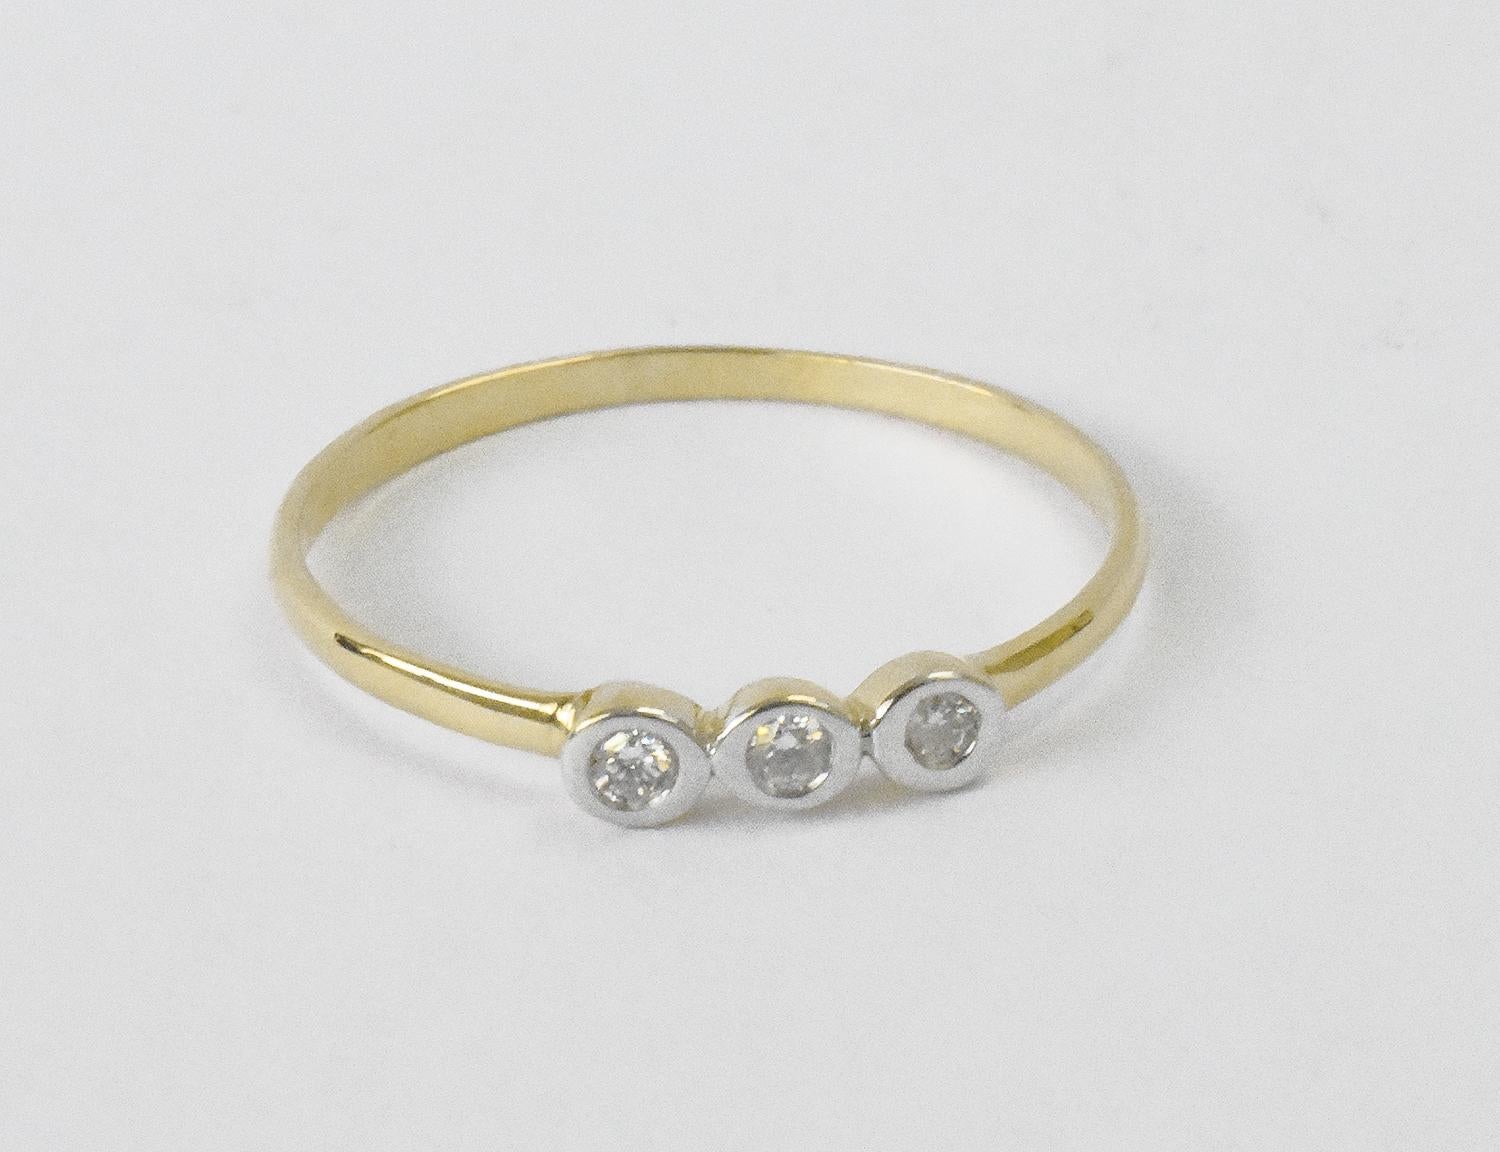 For Sale:  14k Gold Diamond 1.9 mm Ring Bezel Setting Three Diamond Ring Trio Diamond Ring 3